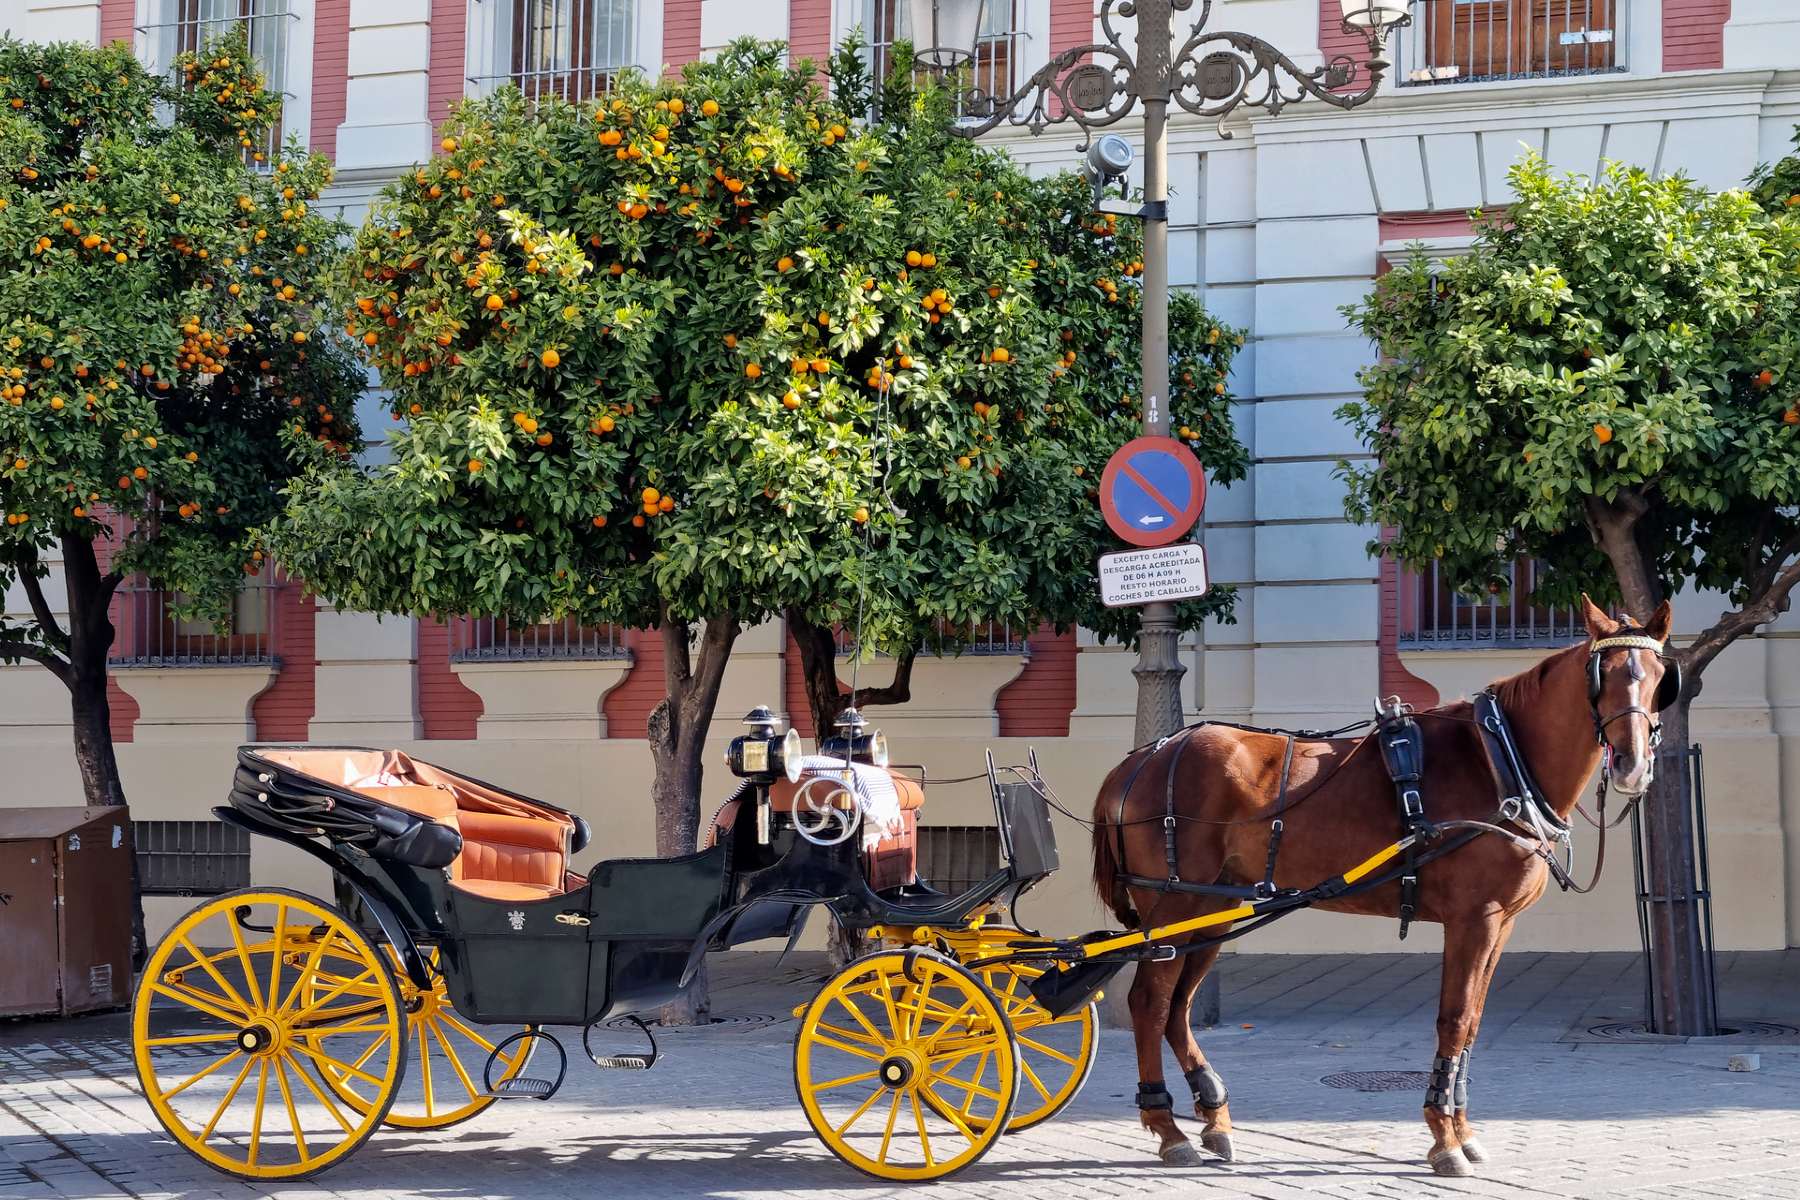 Carruajes eléctricos en lugar de coches de caballos: el turismo se adapta a la movilidad